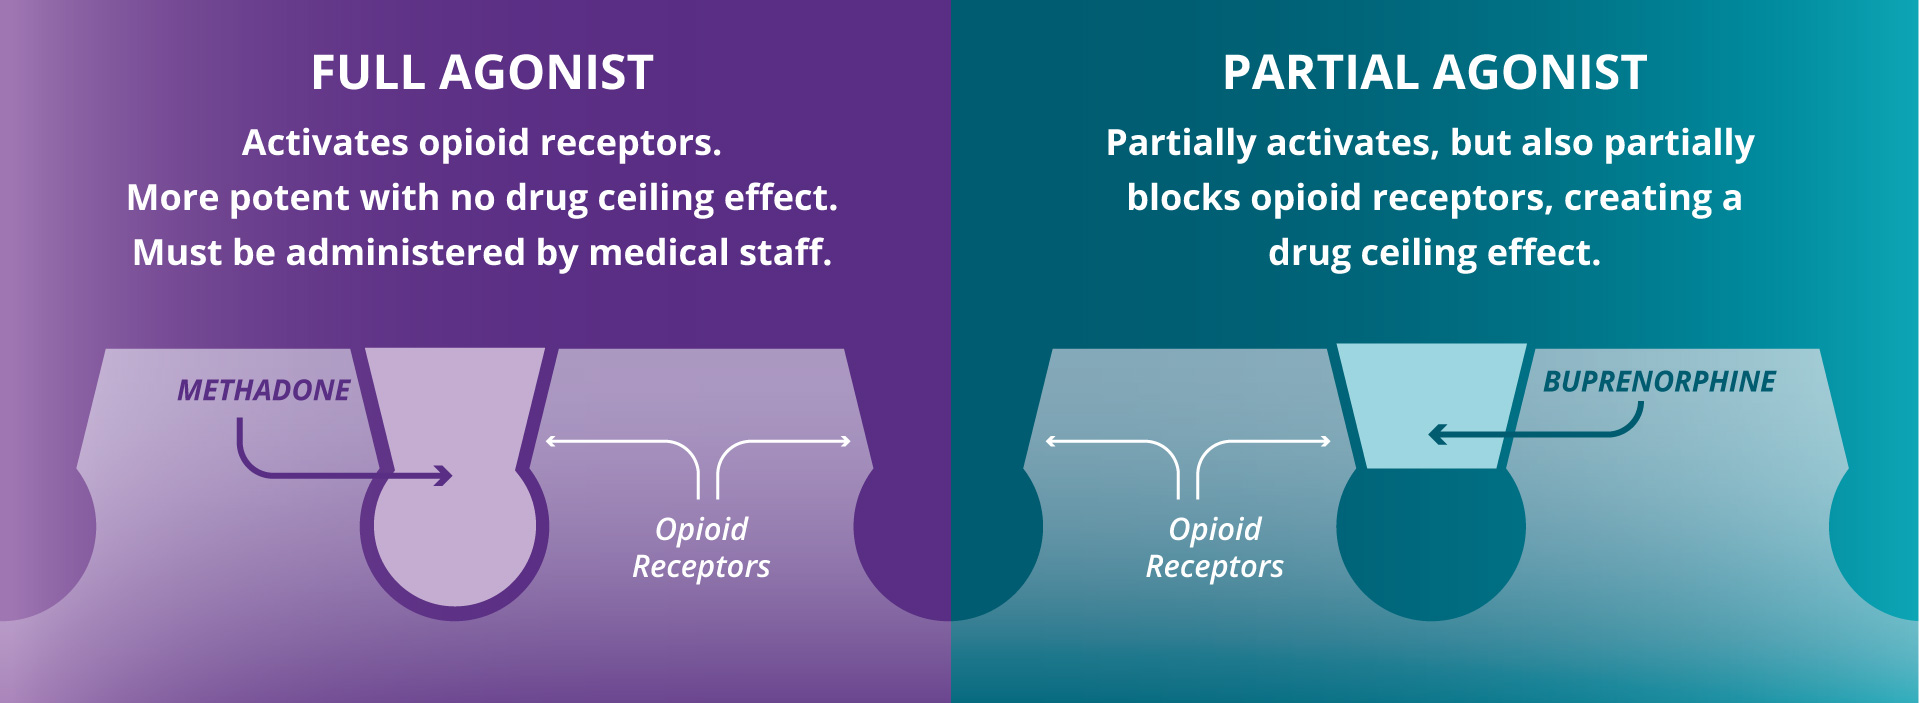 opiates drugs examples